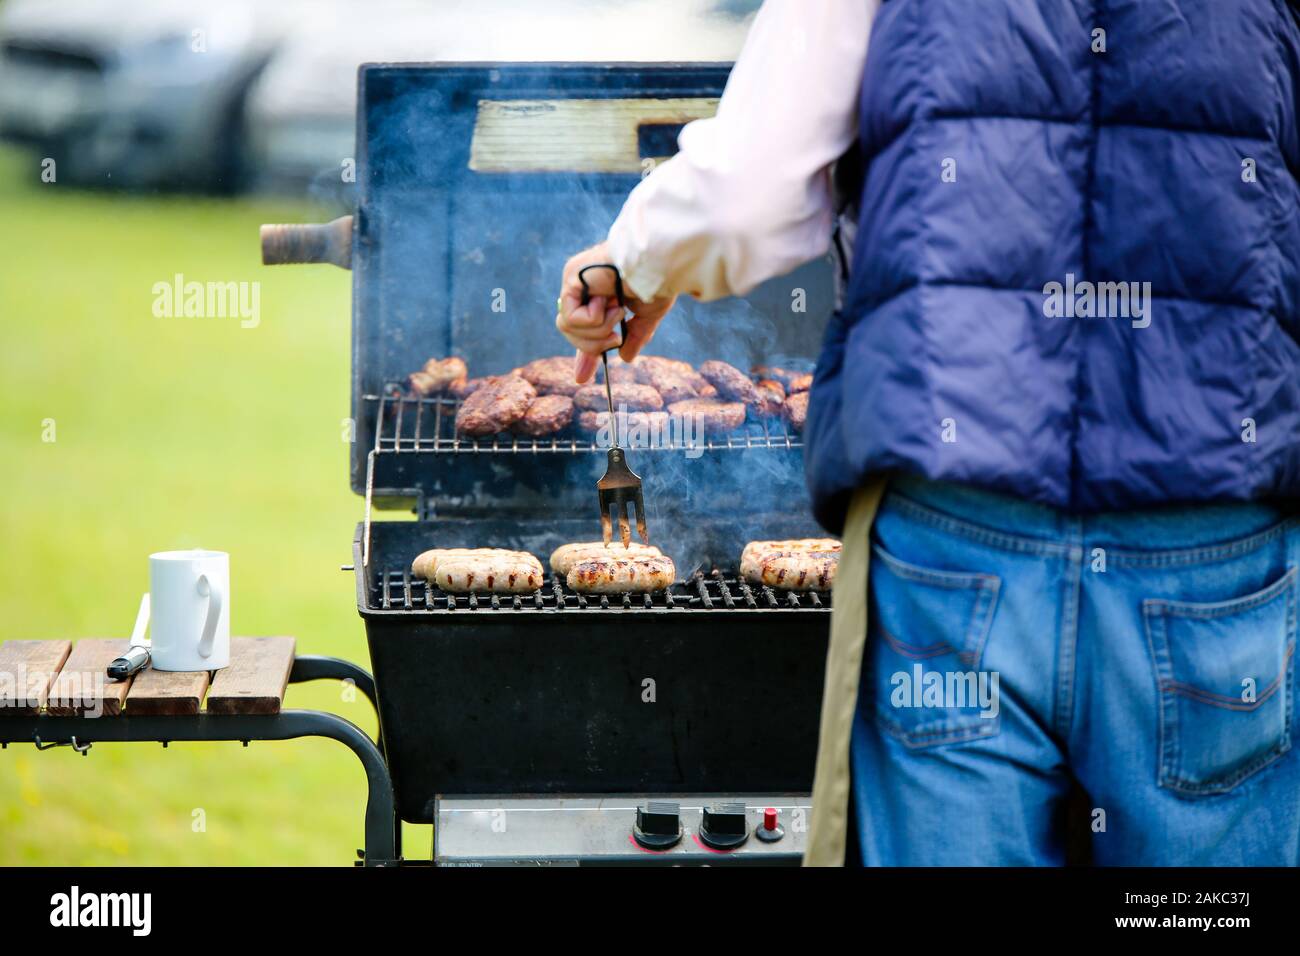 Un homme la cuisson des saucisses sur un barbecue à gaz ouvert, dans l'arrière-plan il y a un tas de hamburgers cuits en attente d'être servis aux clients Banque D'Images